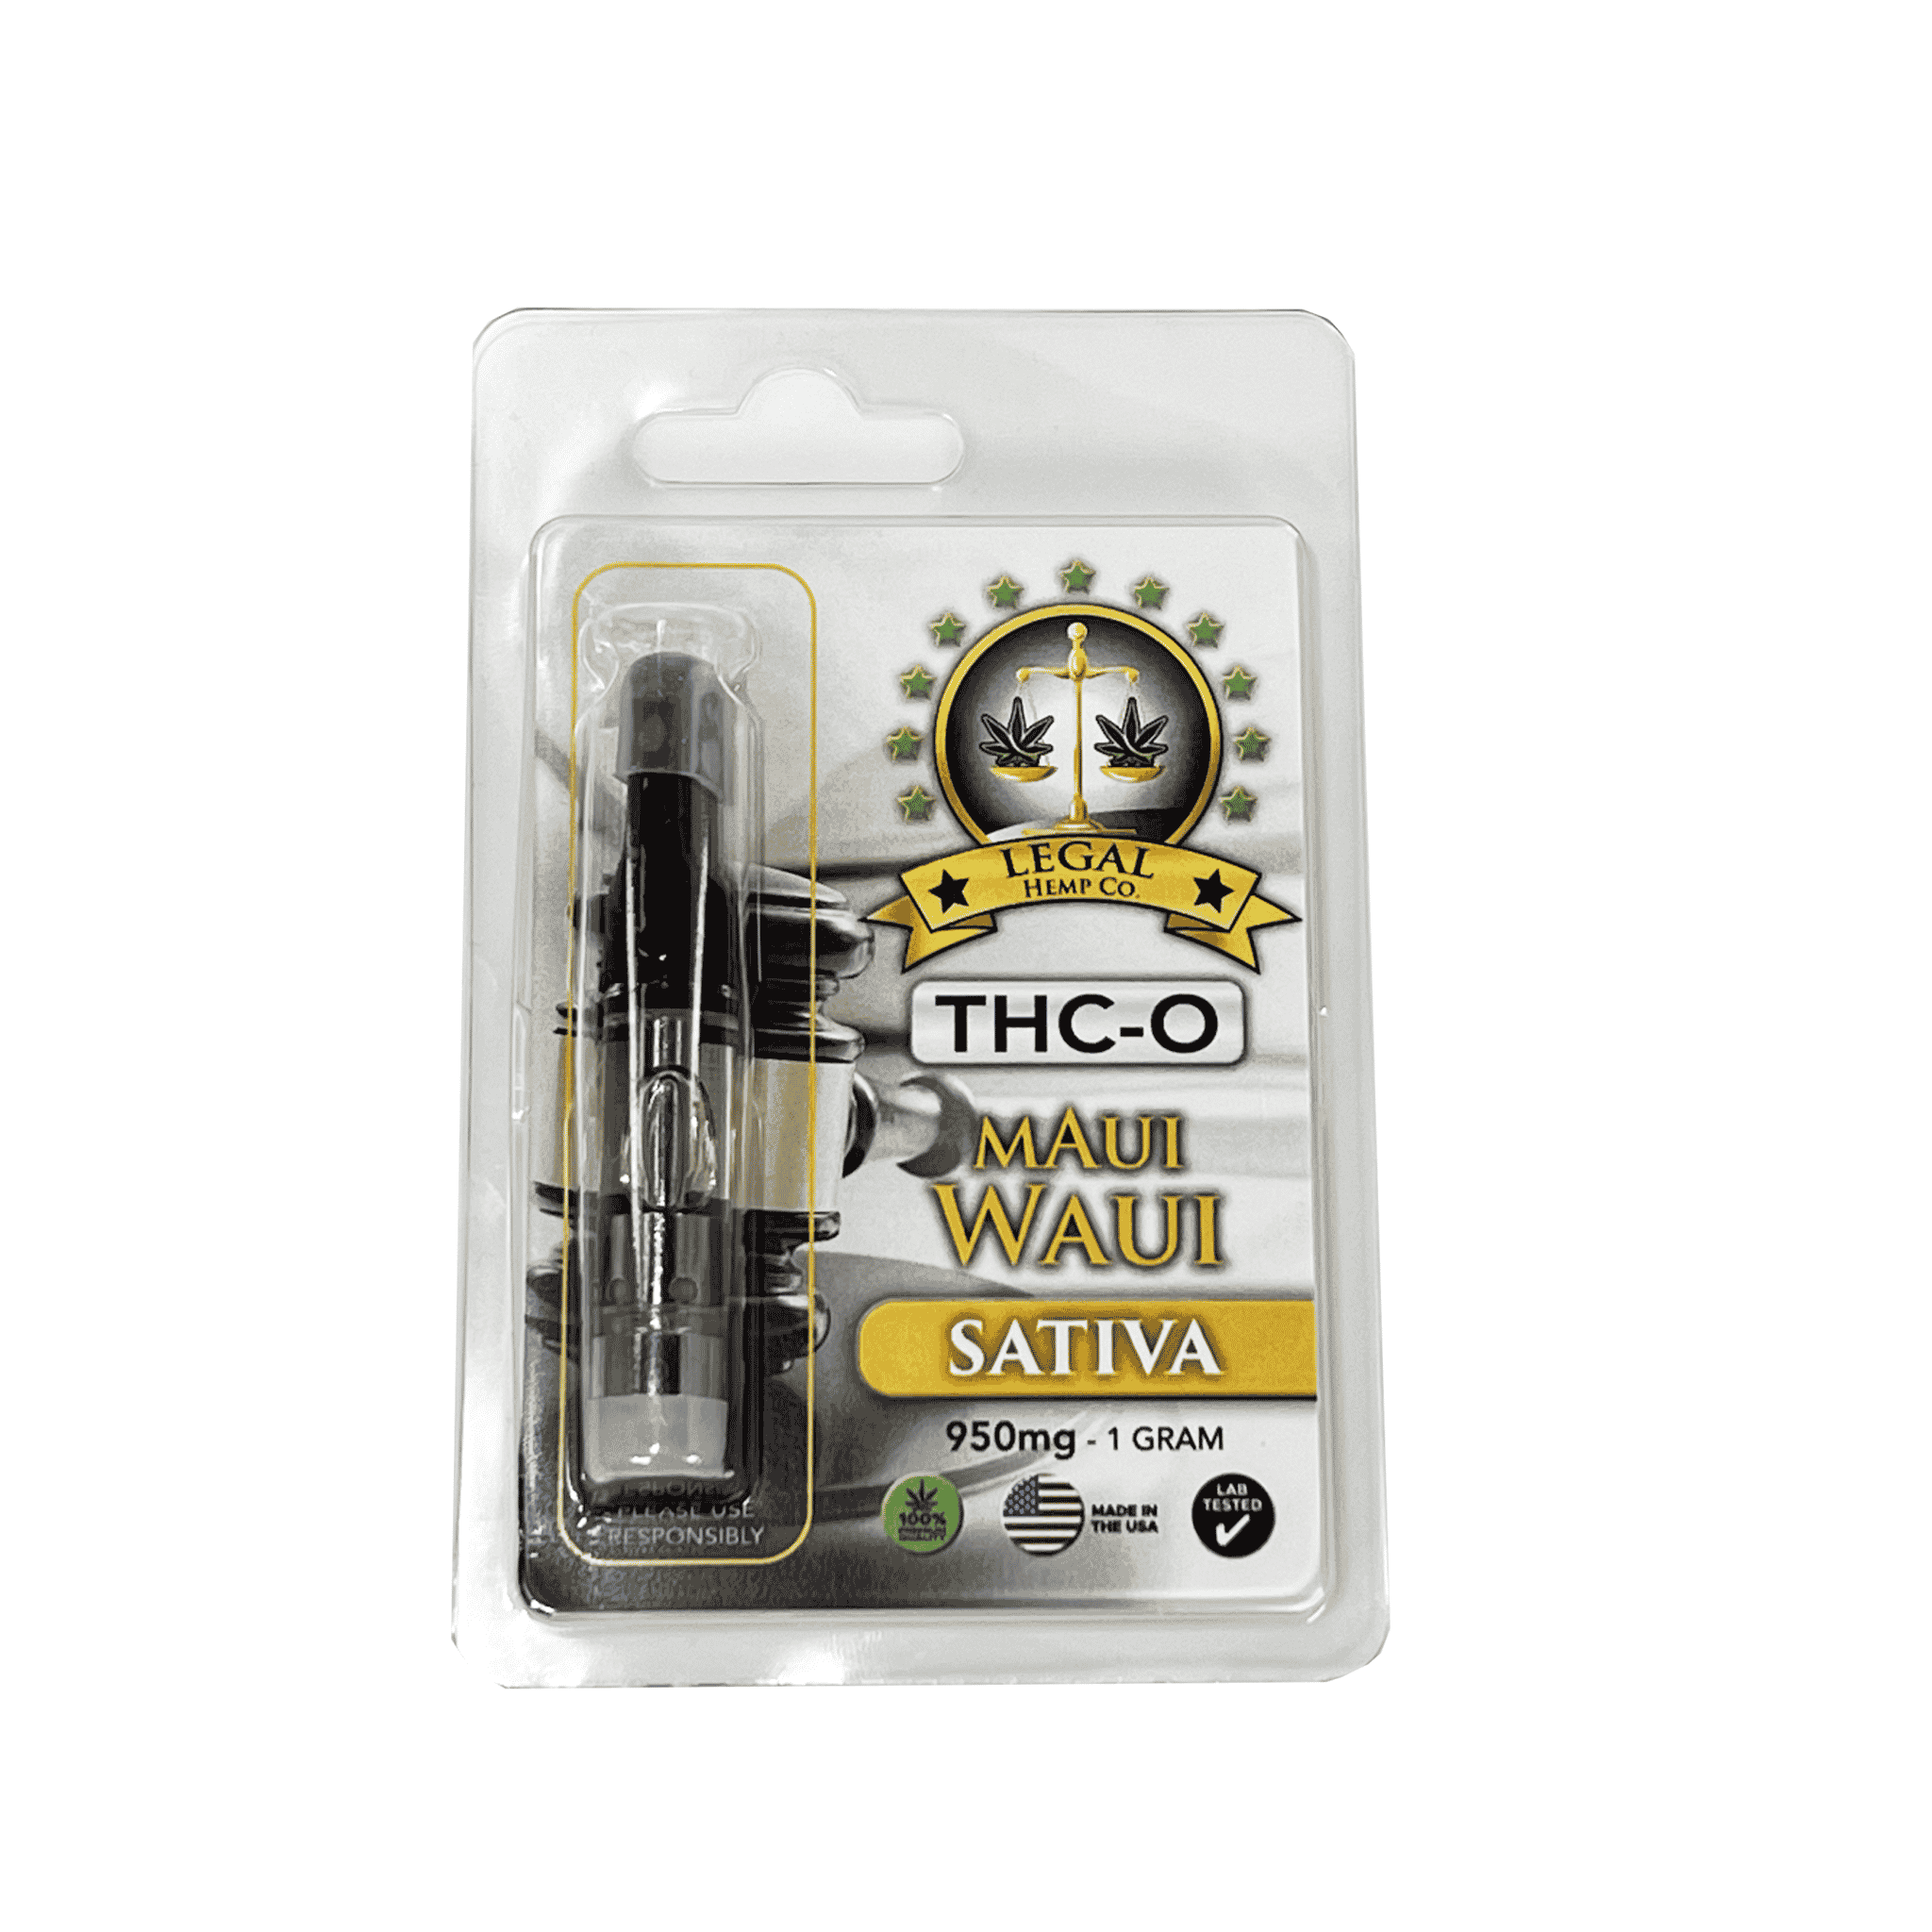 Legal Hemp Co. THC-O 950mg Cartridge maui waui